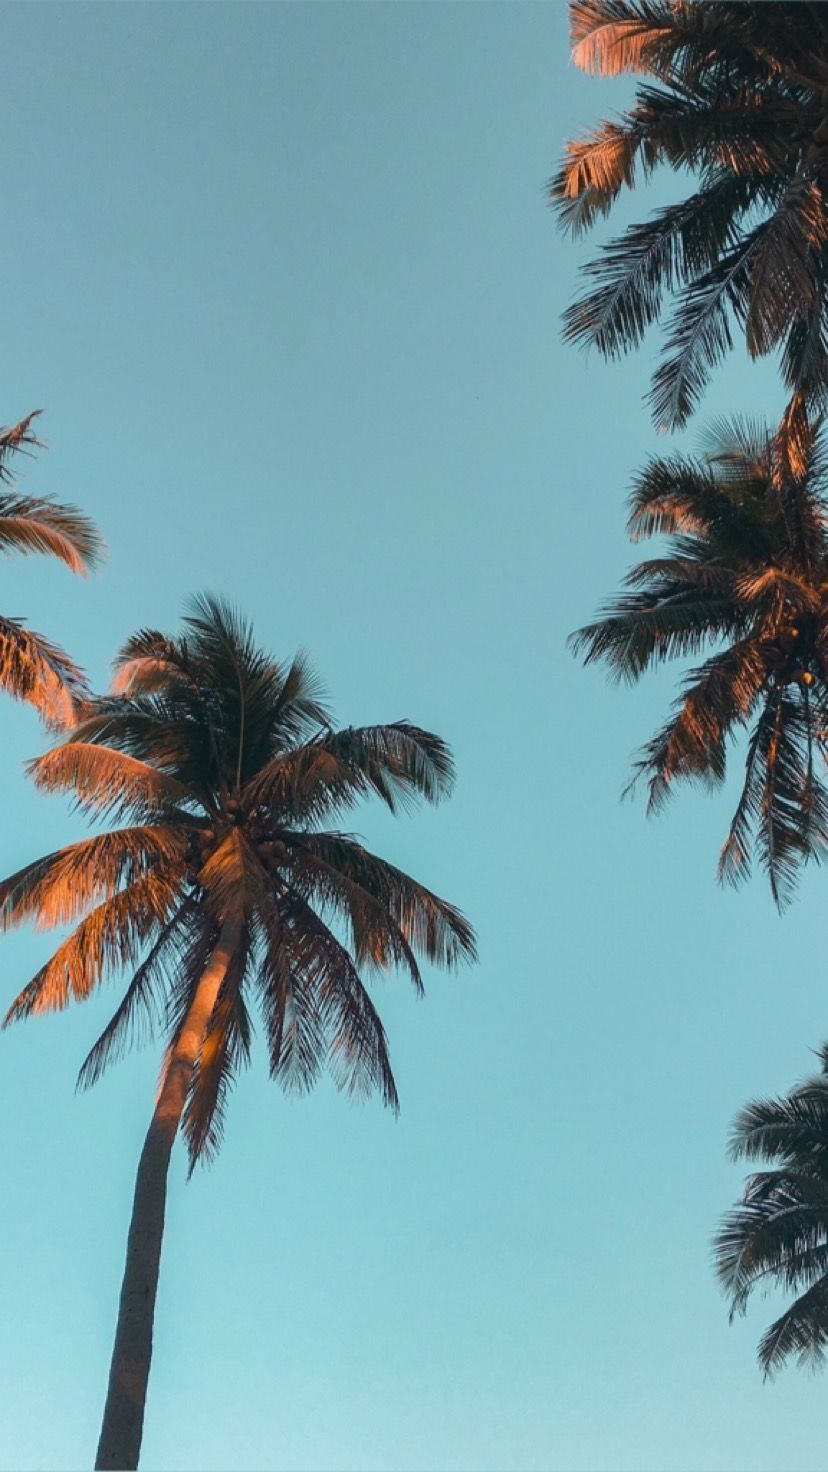 Palm trees against a blue sky - Palm tree